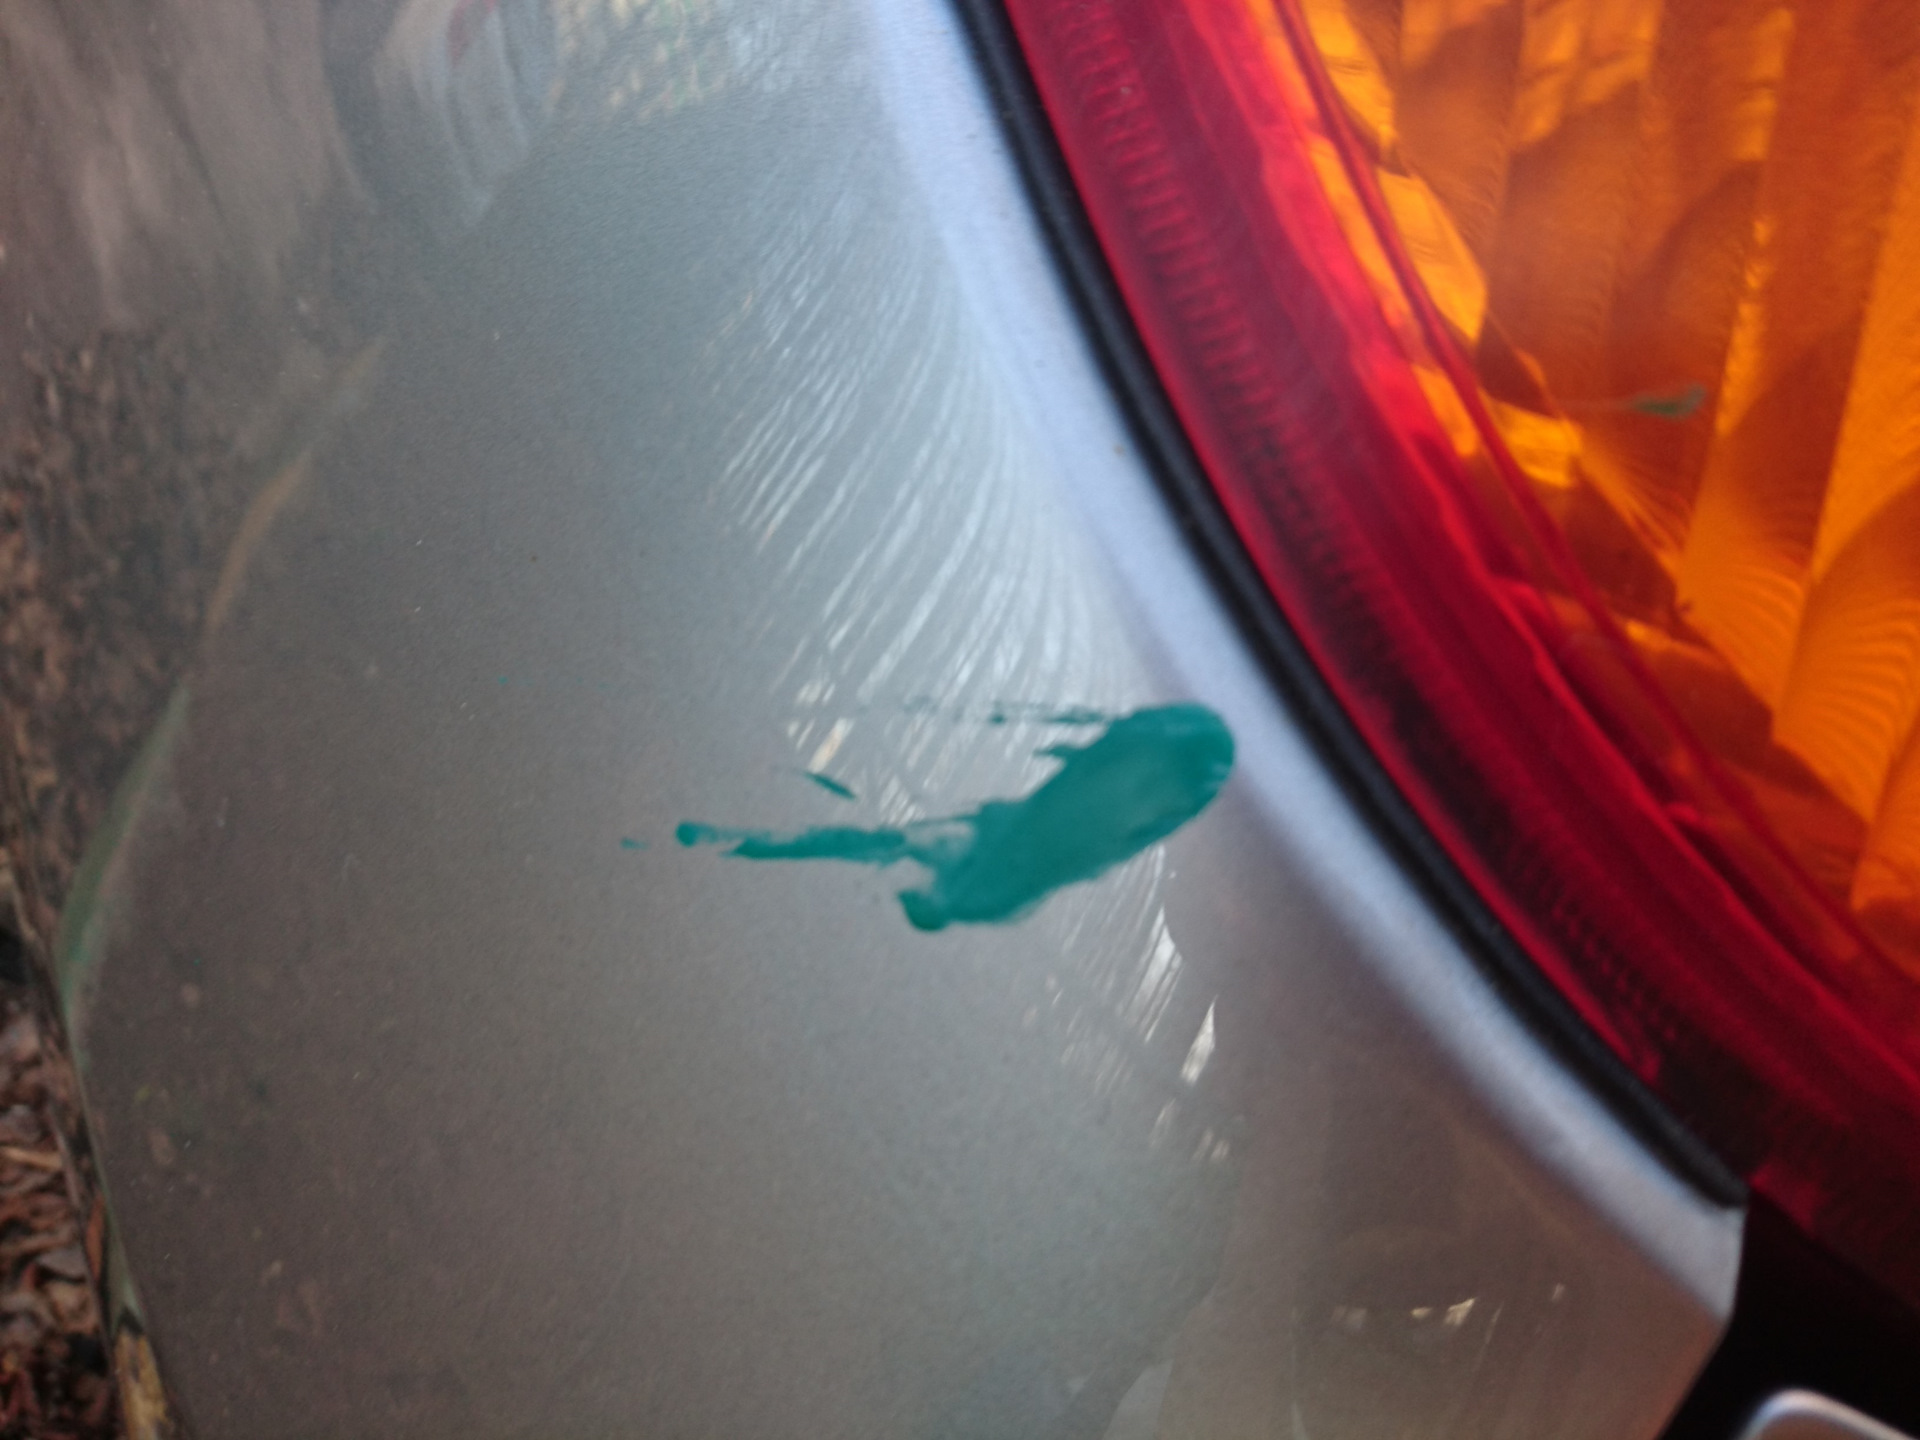 Как удалить краску с автомобиля. Предлагаем профессиональную химию